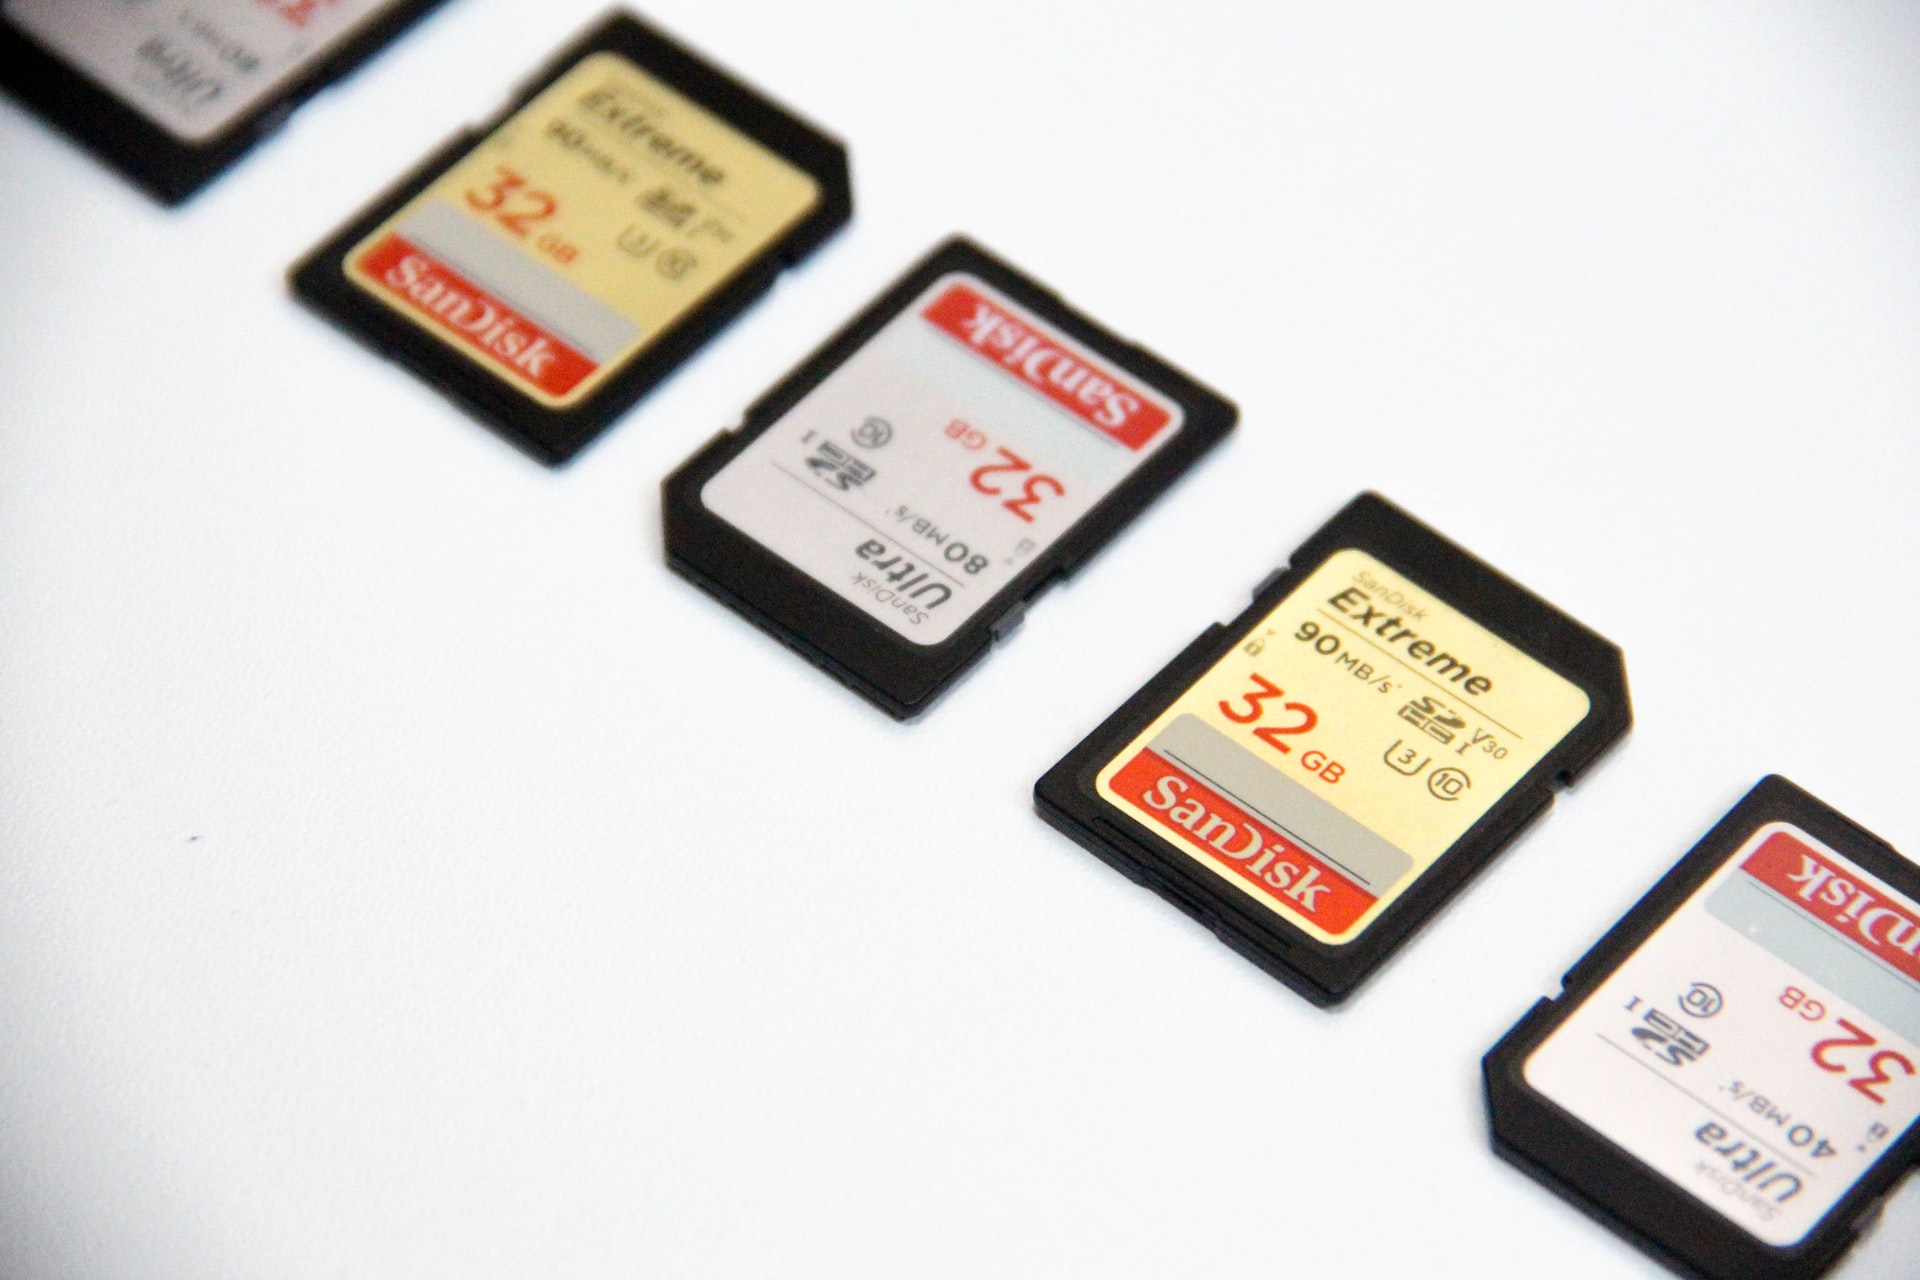 Dandu. on X: Y a des tas de cartes microSD de 982 Go sur  à pas cher     Je  comprends d'où vient cette « capacité » mais les commentaires